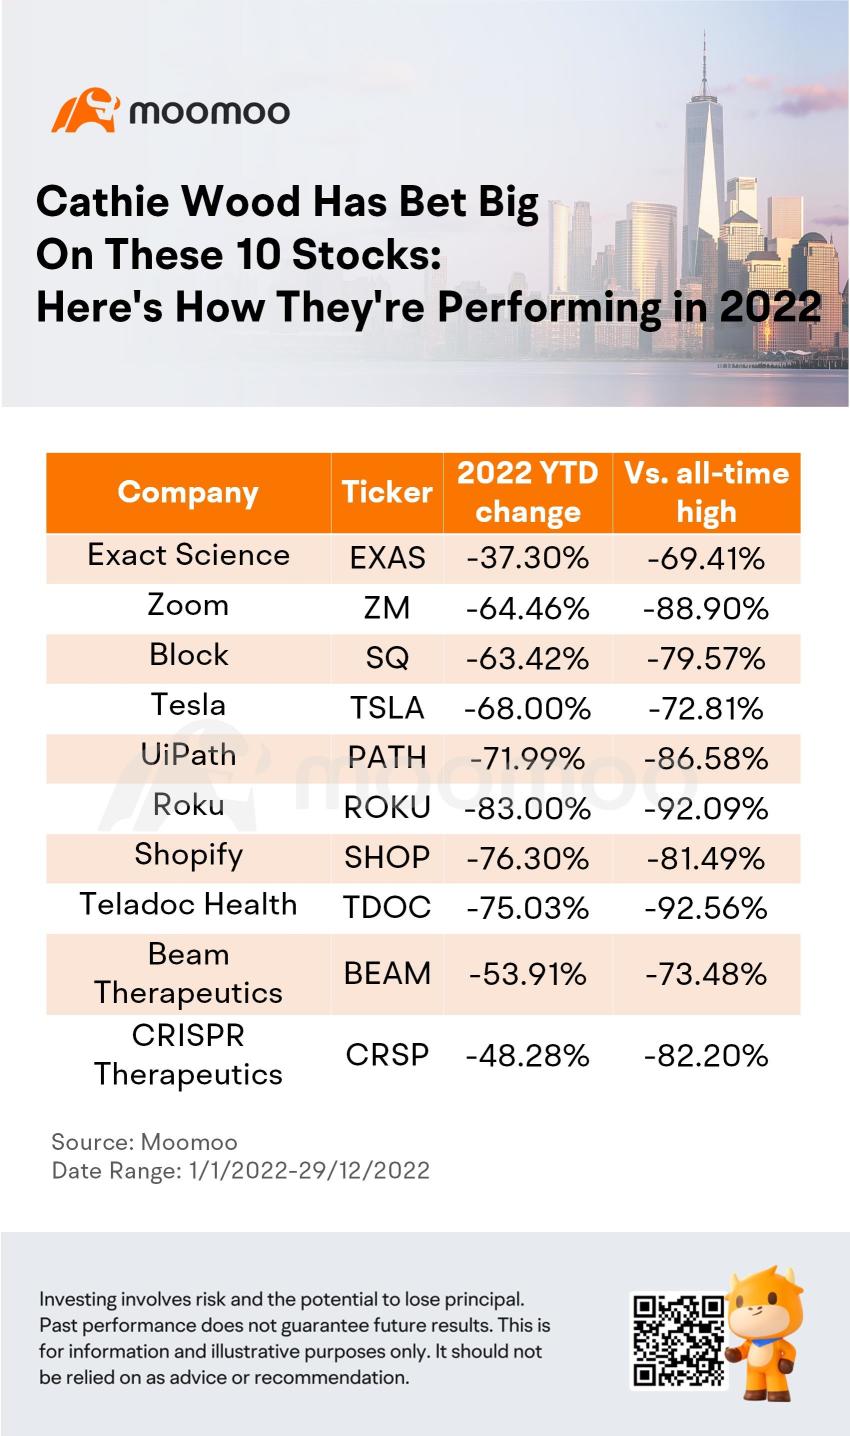 凯西·伍德对这 10 只股票下了大注：以下是它们在 2022 年的表现